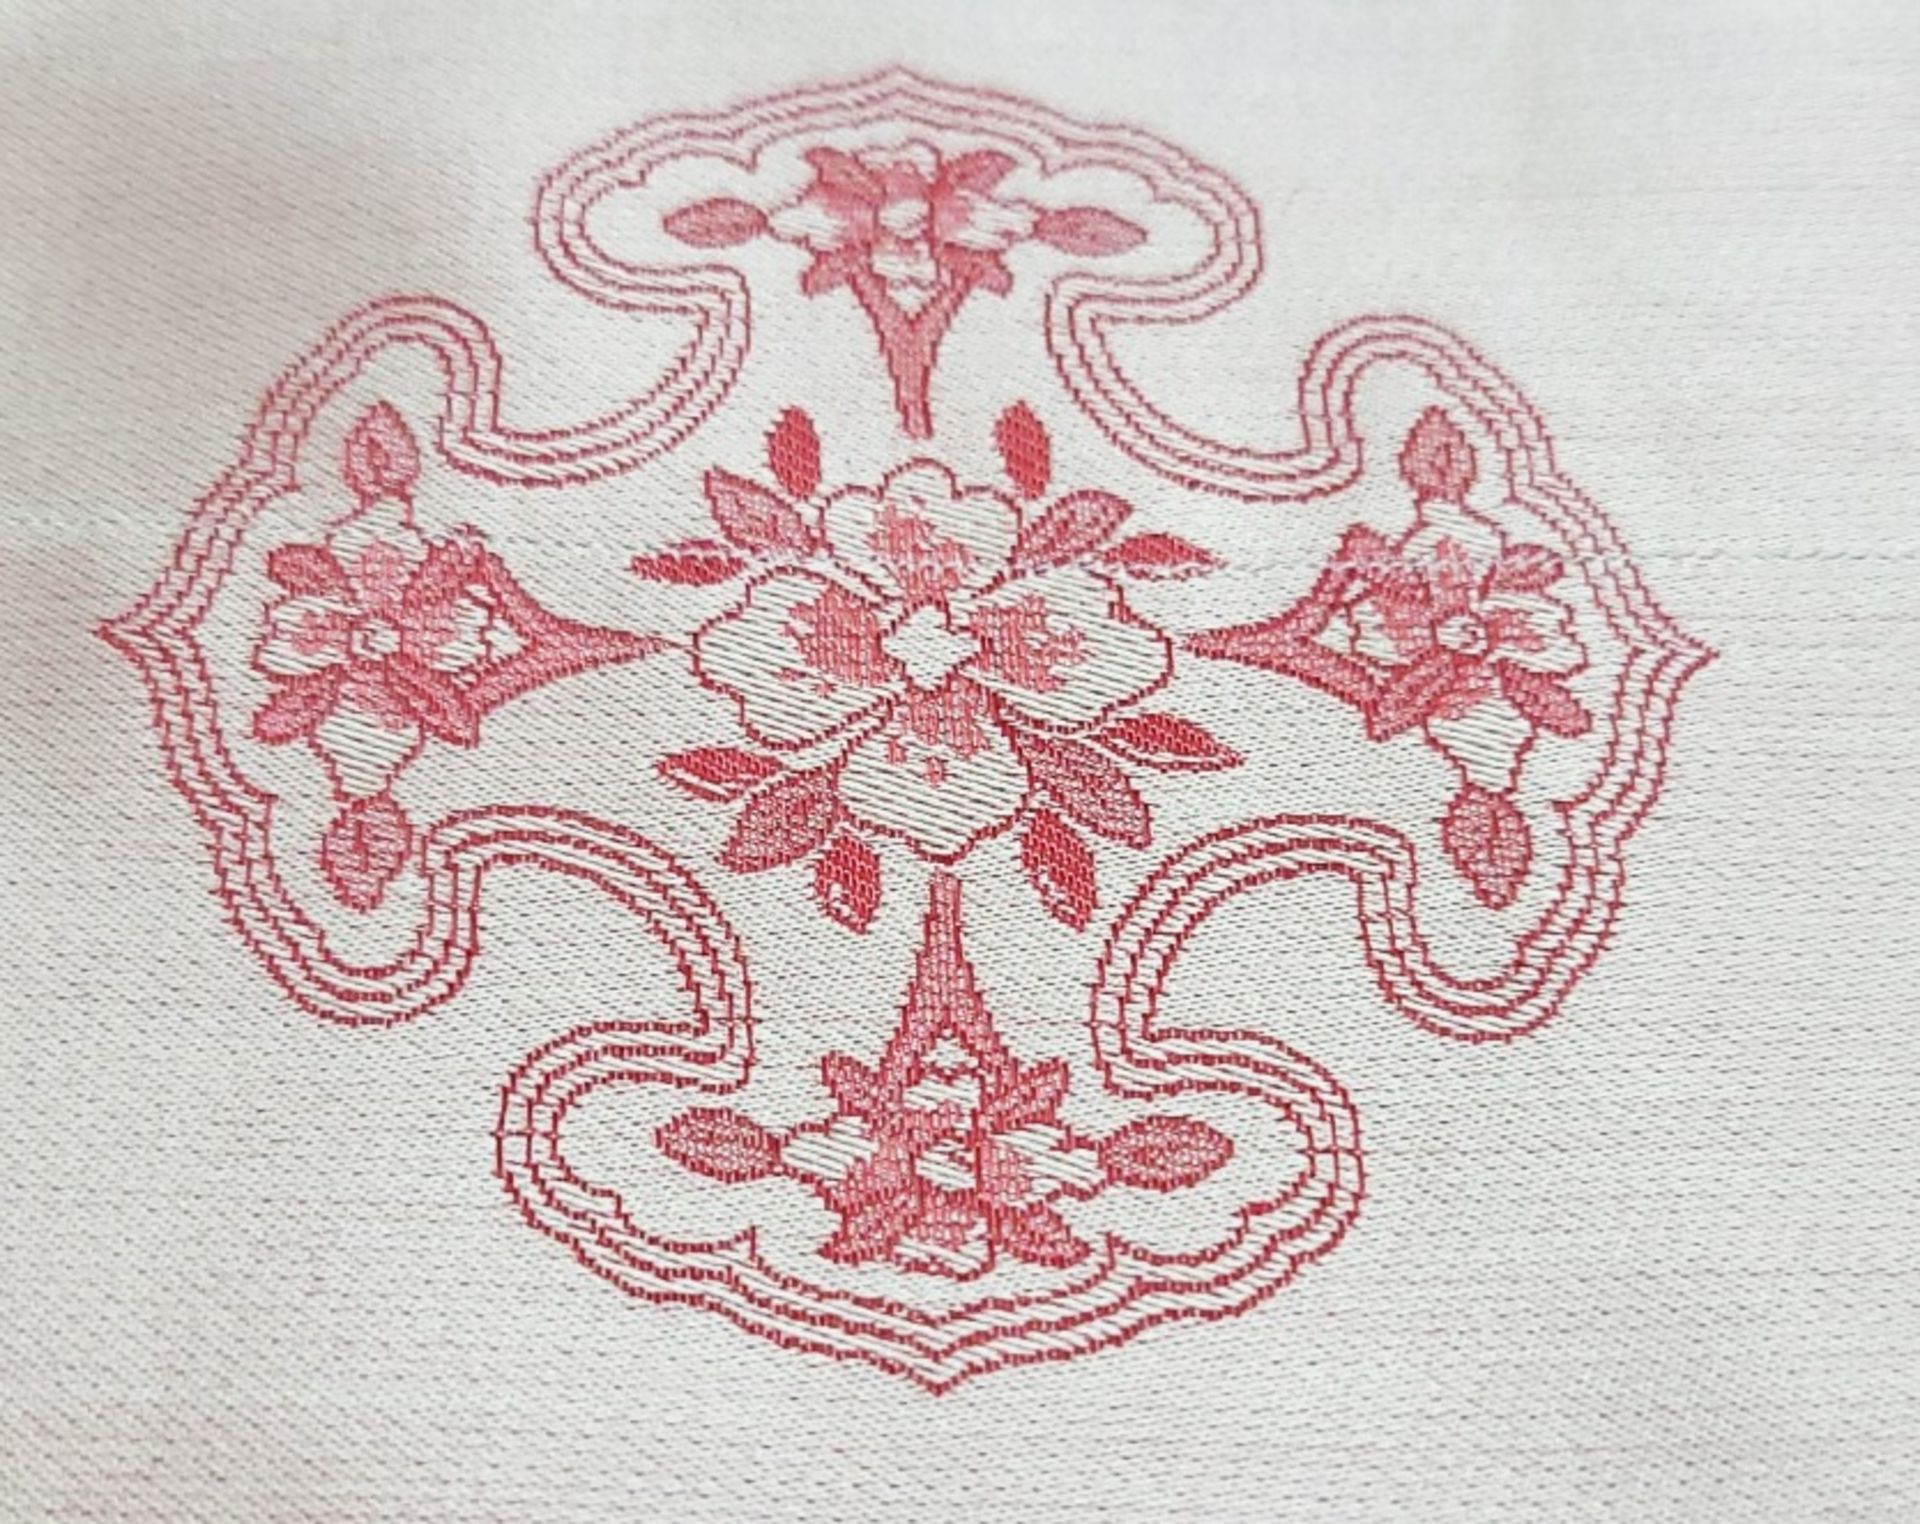 Set Of 2 x PRATESI 'Cina' Jacquard Pink Floral Print Pillow Shams (50x75cm) - Image 4 of 5